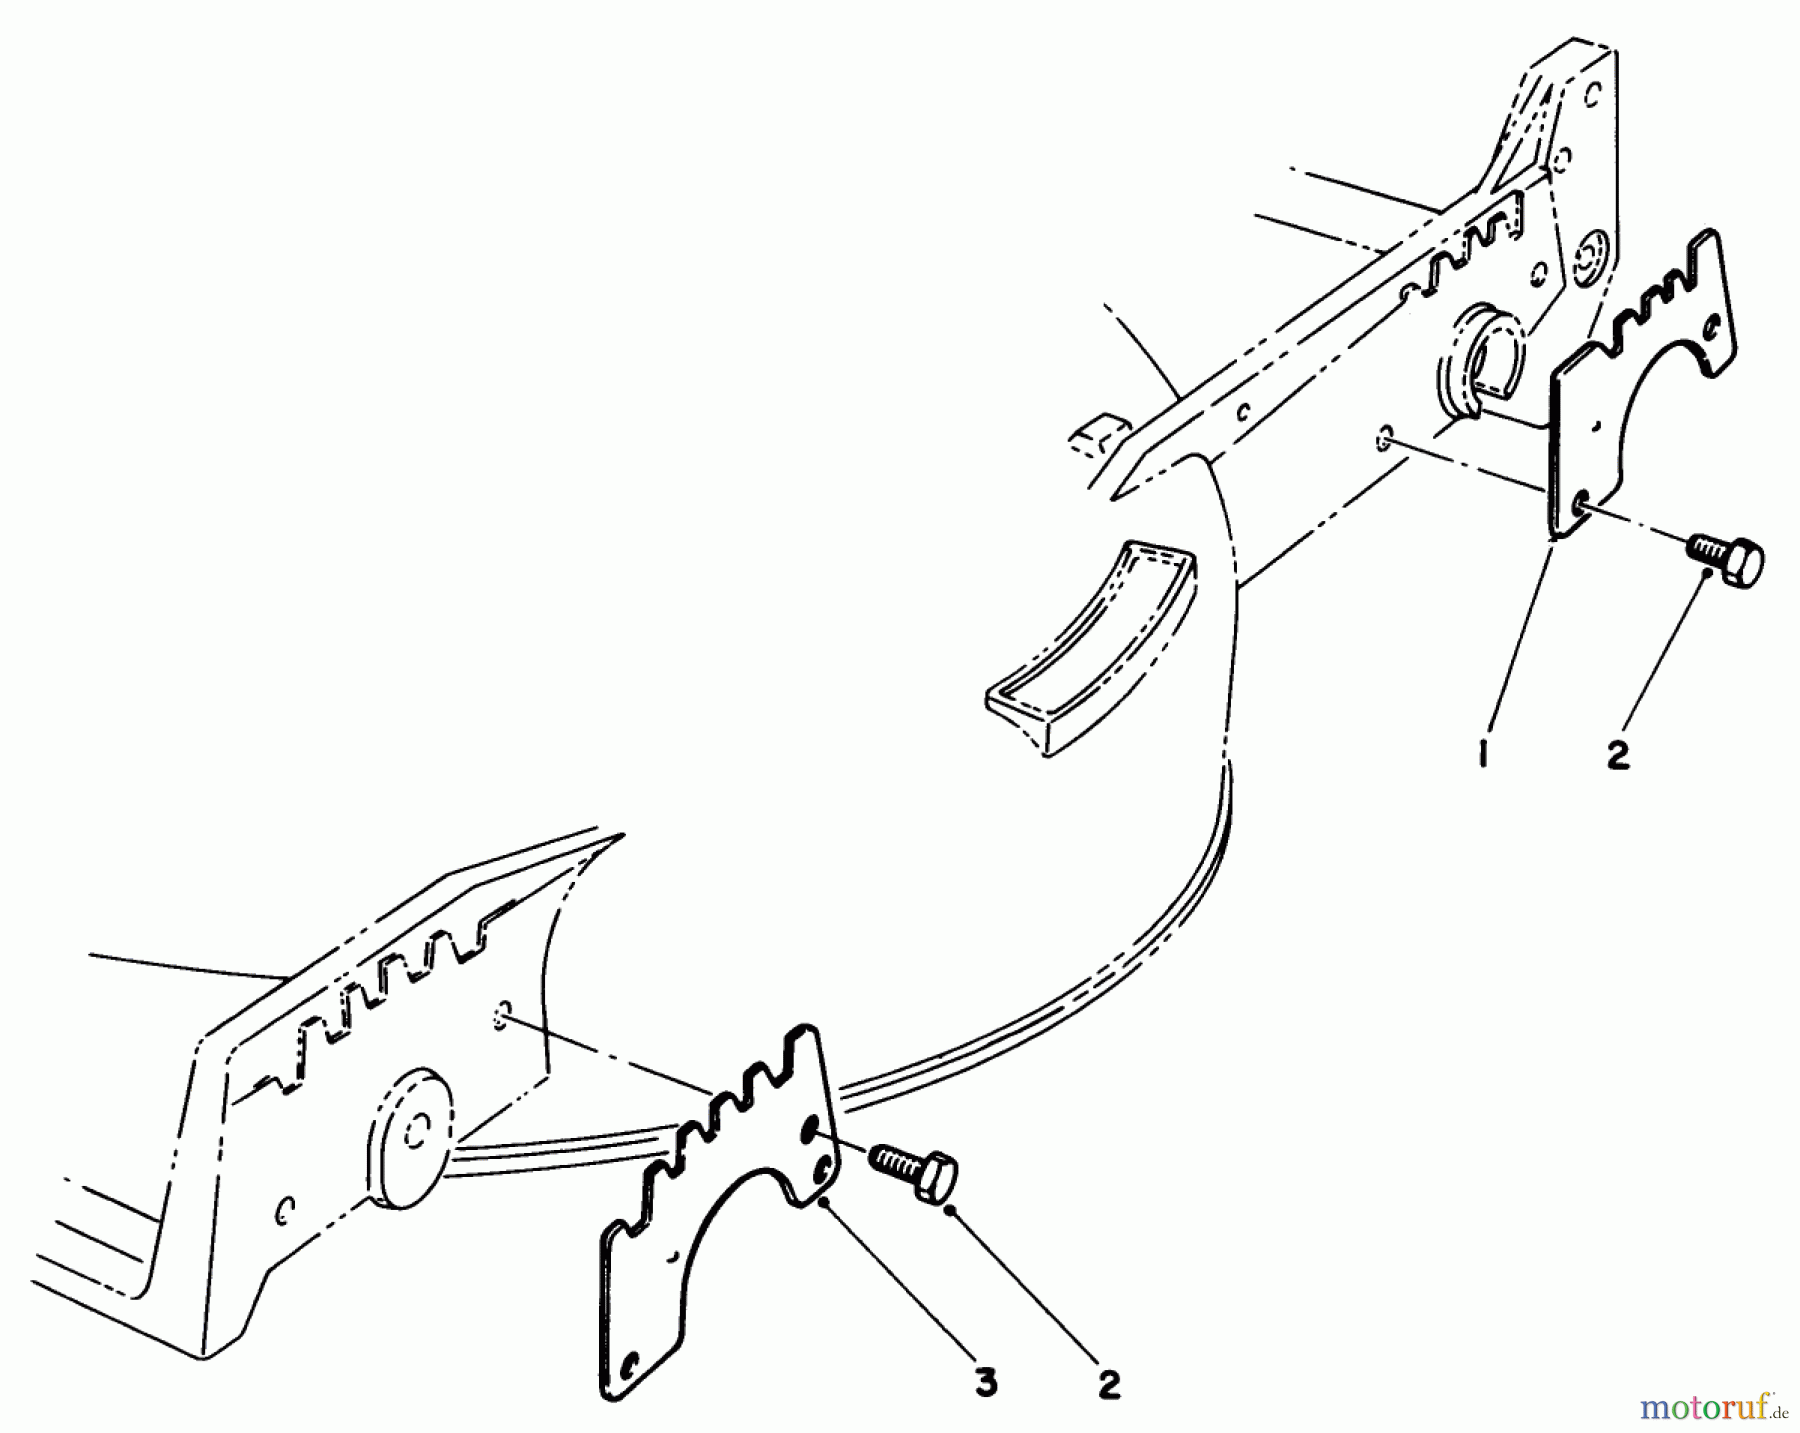  Toro Neu Mowers, Walk-Behind Seite 1 20692C - Toro Lawnmower, 1988 (8000001-8999999) WEAR PLATE KIT NO. 49-4080 (OPTIONAL)